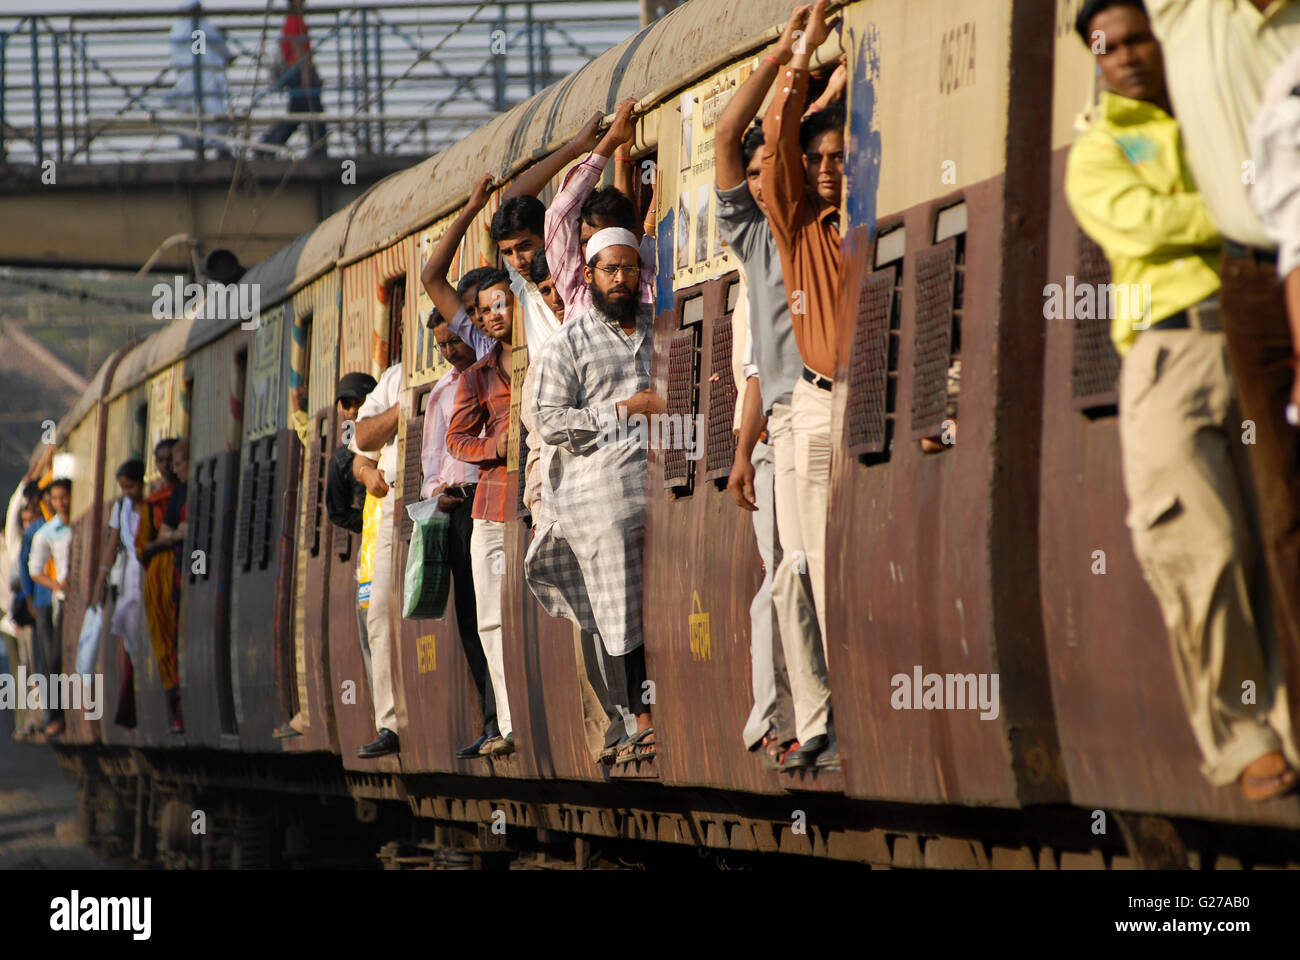 Indien-Mumbai-Bombay Pendler in überfüllten s-Bahn der westlichen Eisenbahnen in Bandra Station / INDIEN Bombay Mumbai Das Wirtschaftszentrum Und Finanzzentrum Indiens, Zugmitte in Überfuellten S-Bahn Zuegen der Western Railways in Bandra Stockfoto